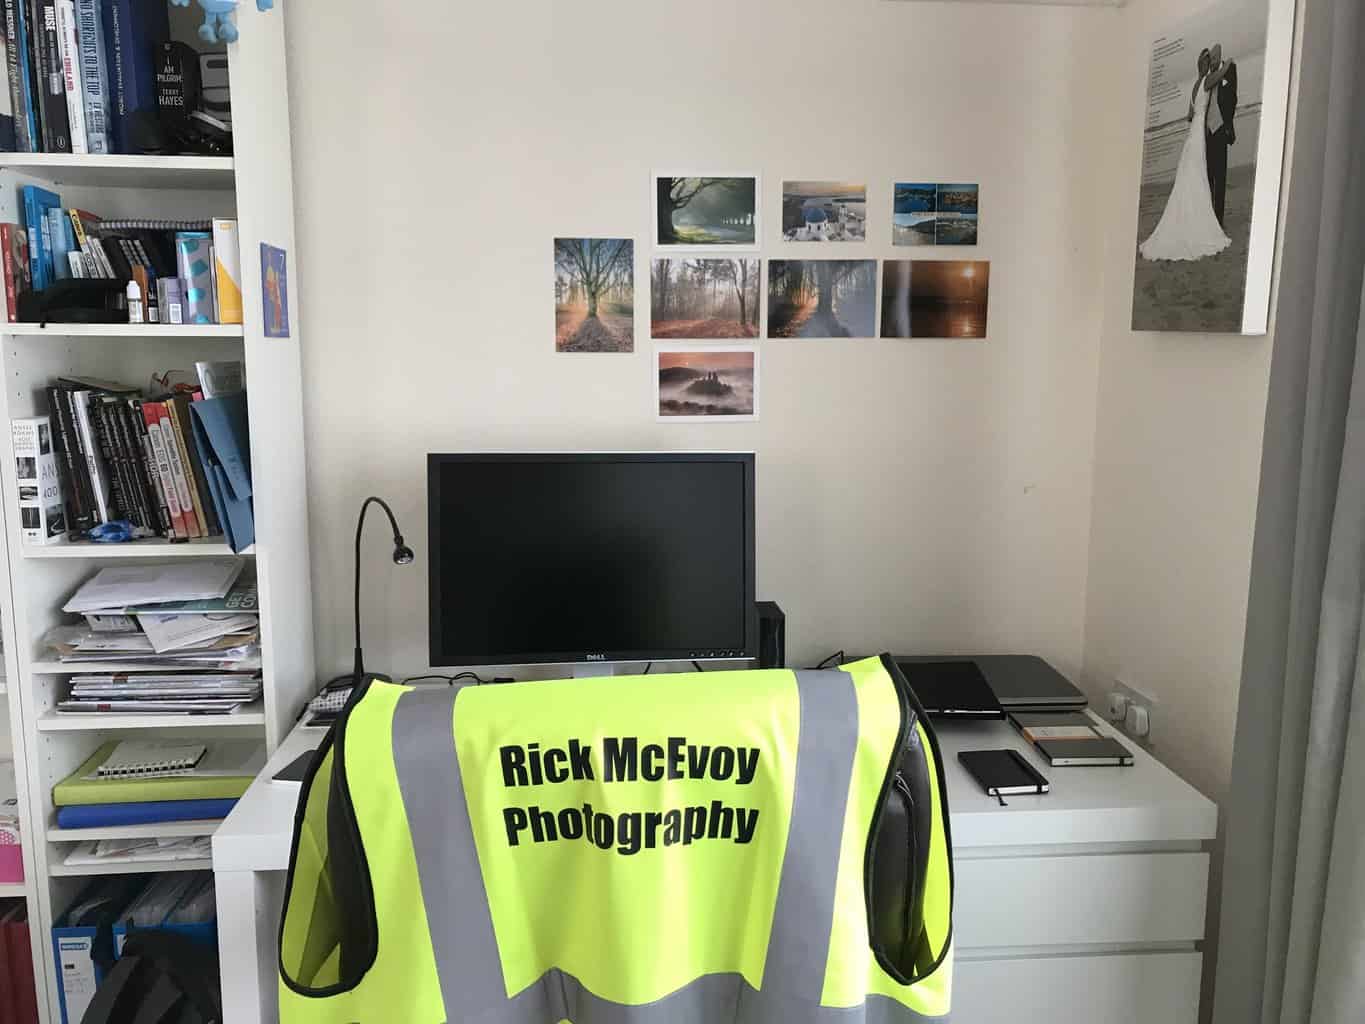  Rick McEvoy Photography personalised clothing 